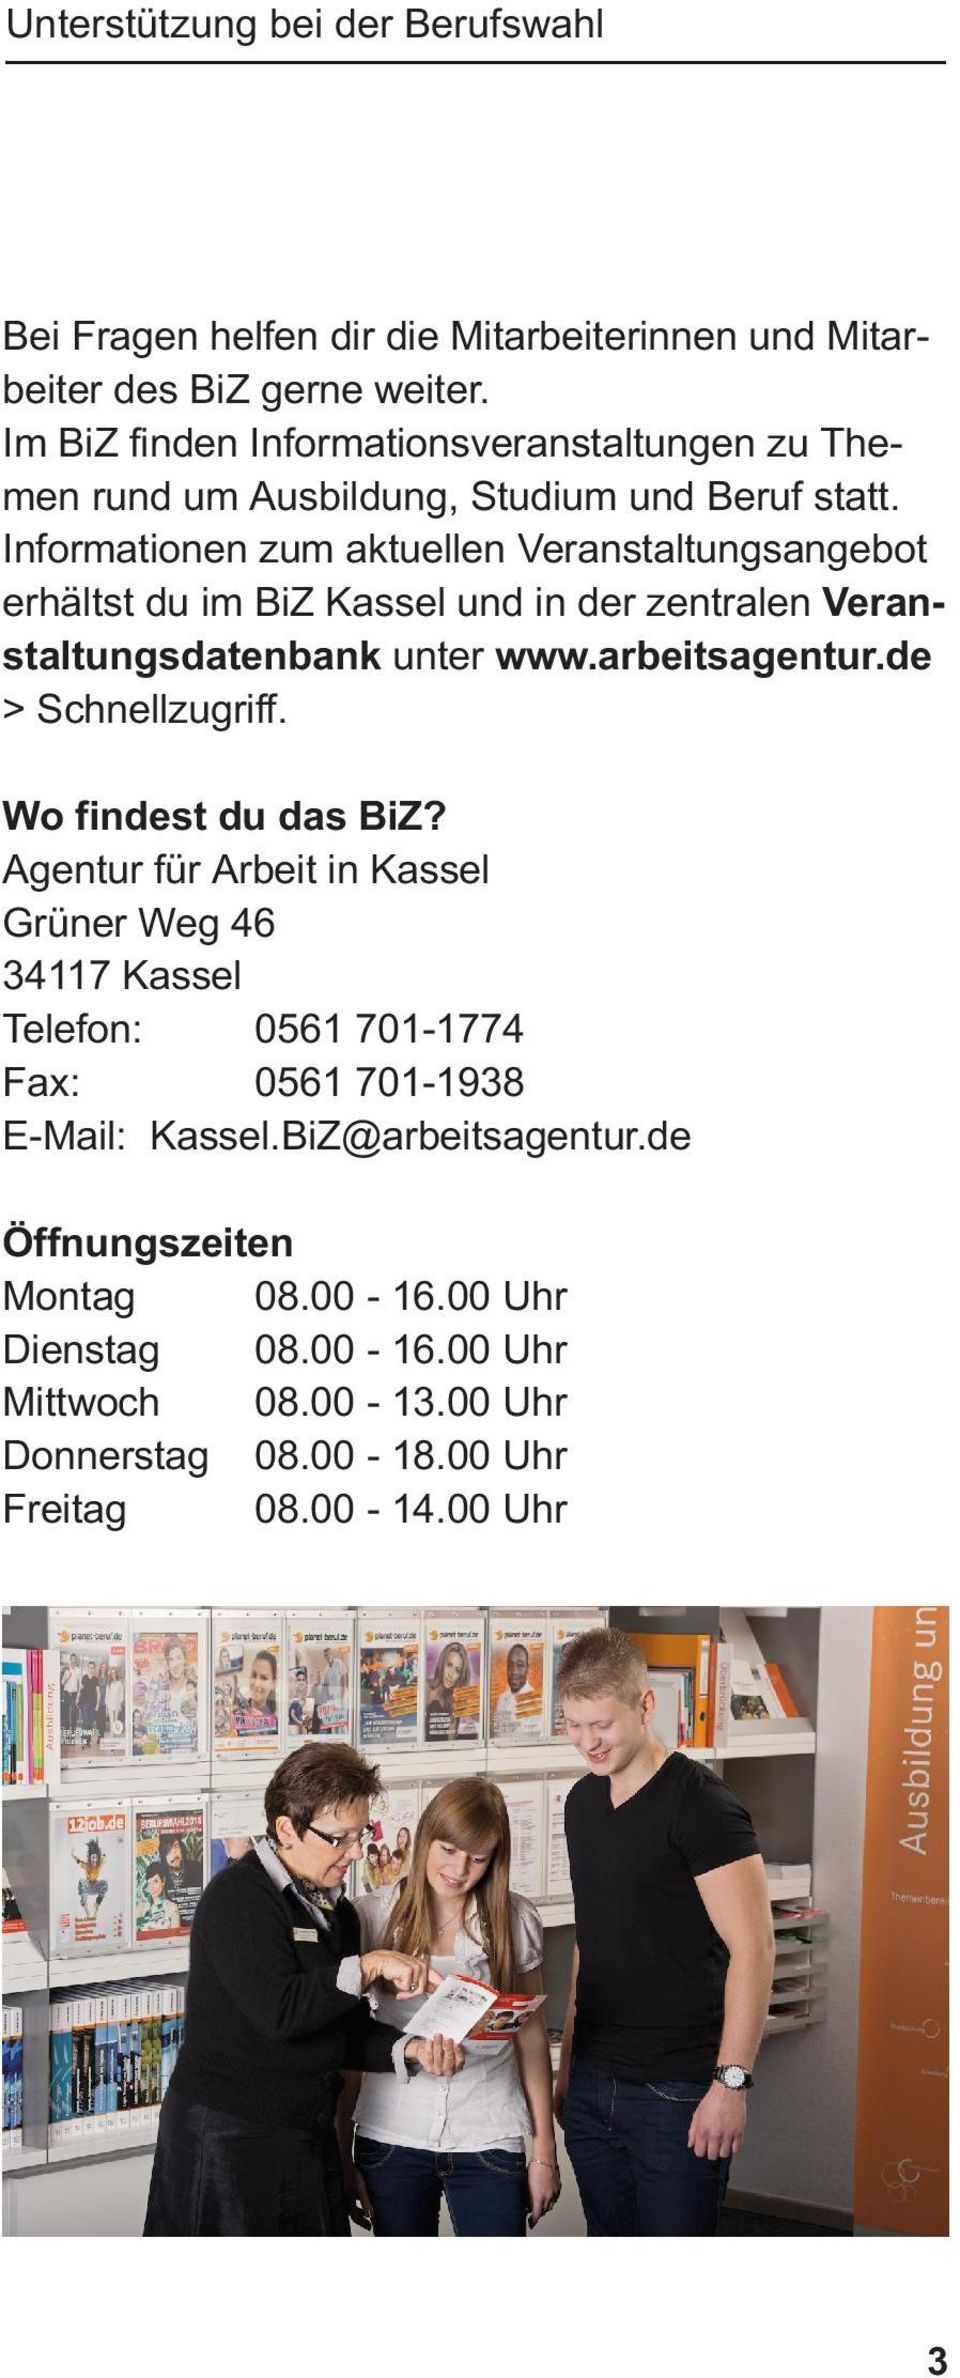 Informationen zum aktuellen Veranstaltungsangebot erhältst du im BiZ Kassel und in der zentralen Veranstaltungsdatenbank unter www.arbeitsagentur.de > Schnellzugriff. Wo findest du das BiZ?